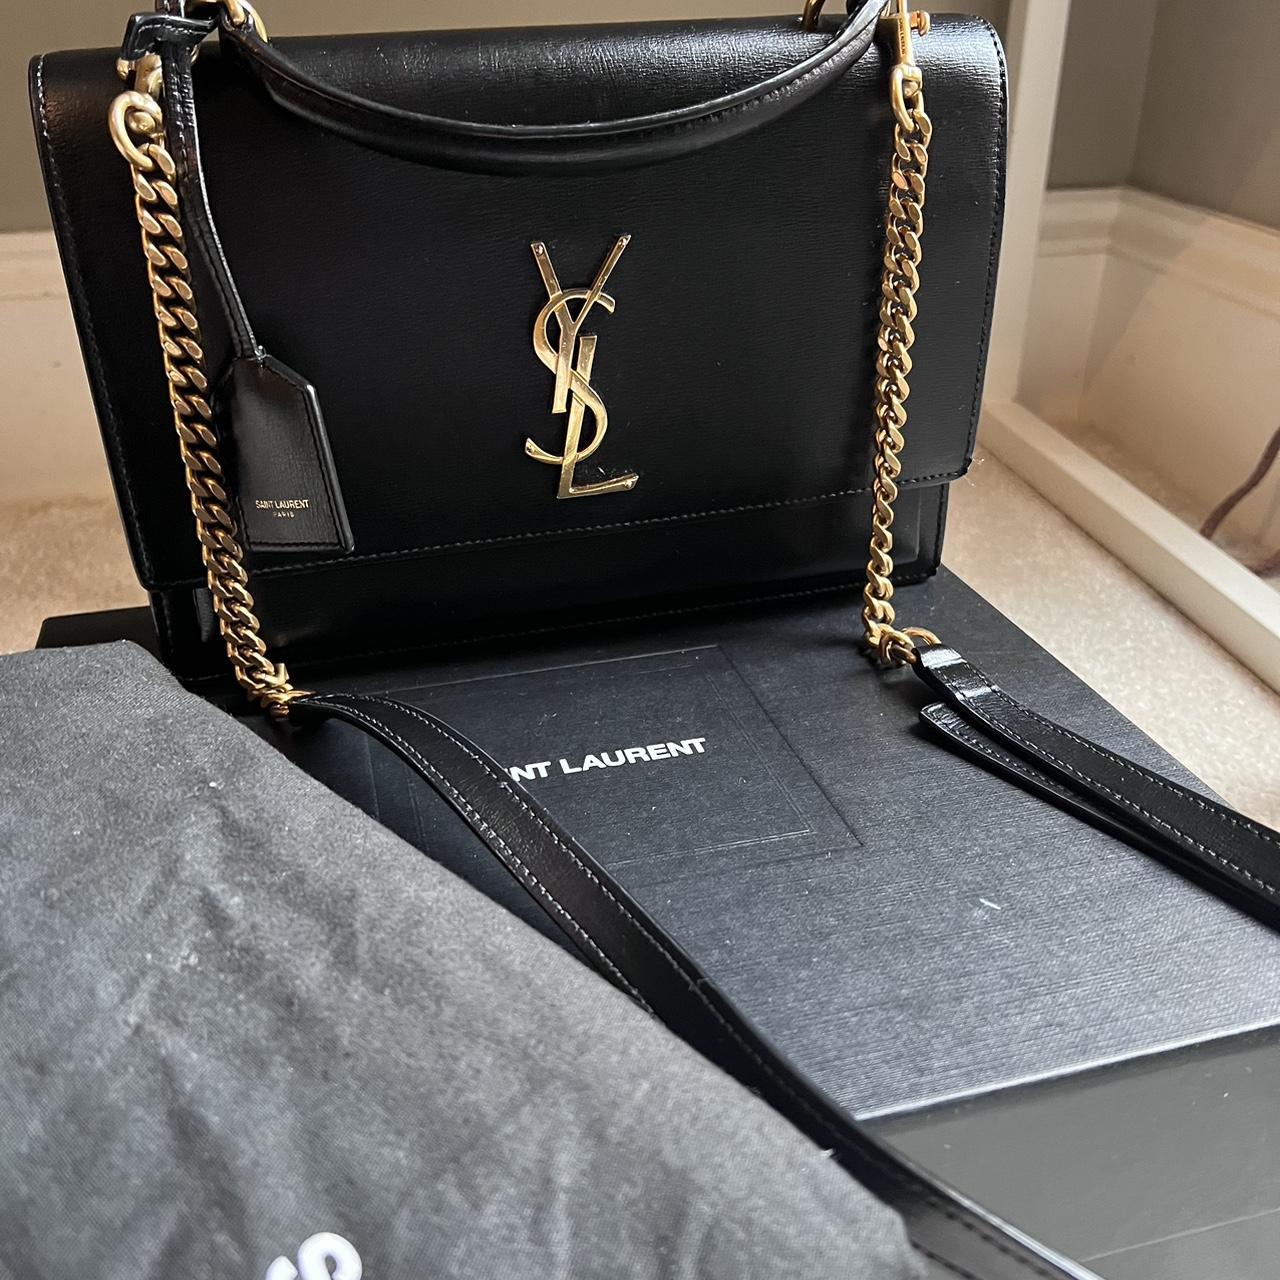 Yves Saint Laurent Women's Black Bag | Depop